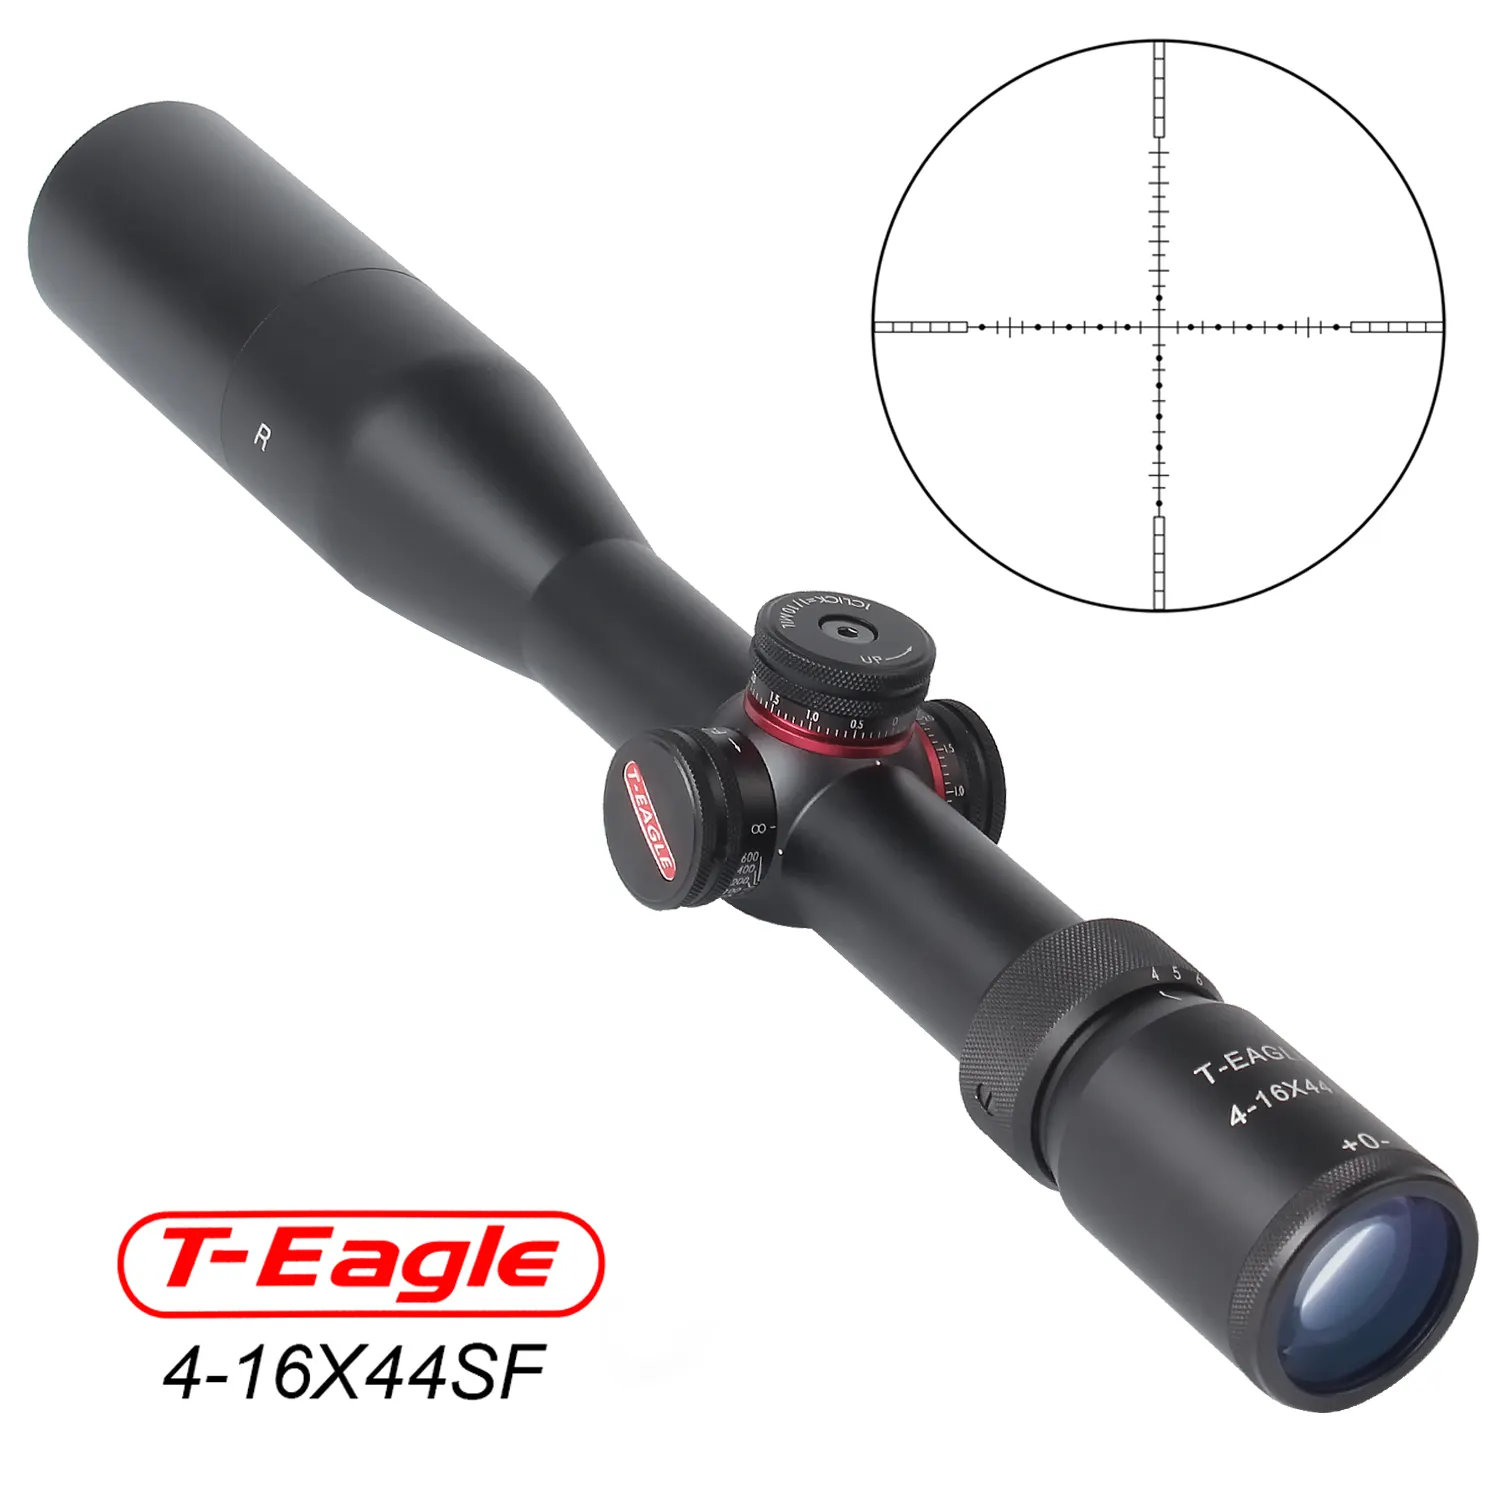 จุดขายส่ง T-EAGLE R 4-16x44 SF Riflescope พร้อมจุดสีแดงที่มีปืนไรเฟิลขนาด11มม. หรือ20มม. สำหรับการยิงปืนอัดลม Pcp